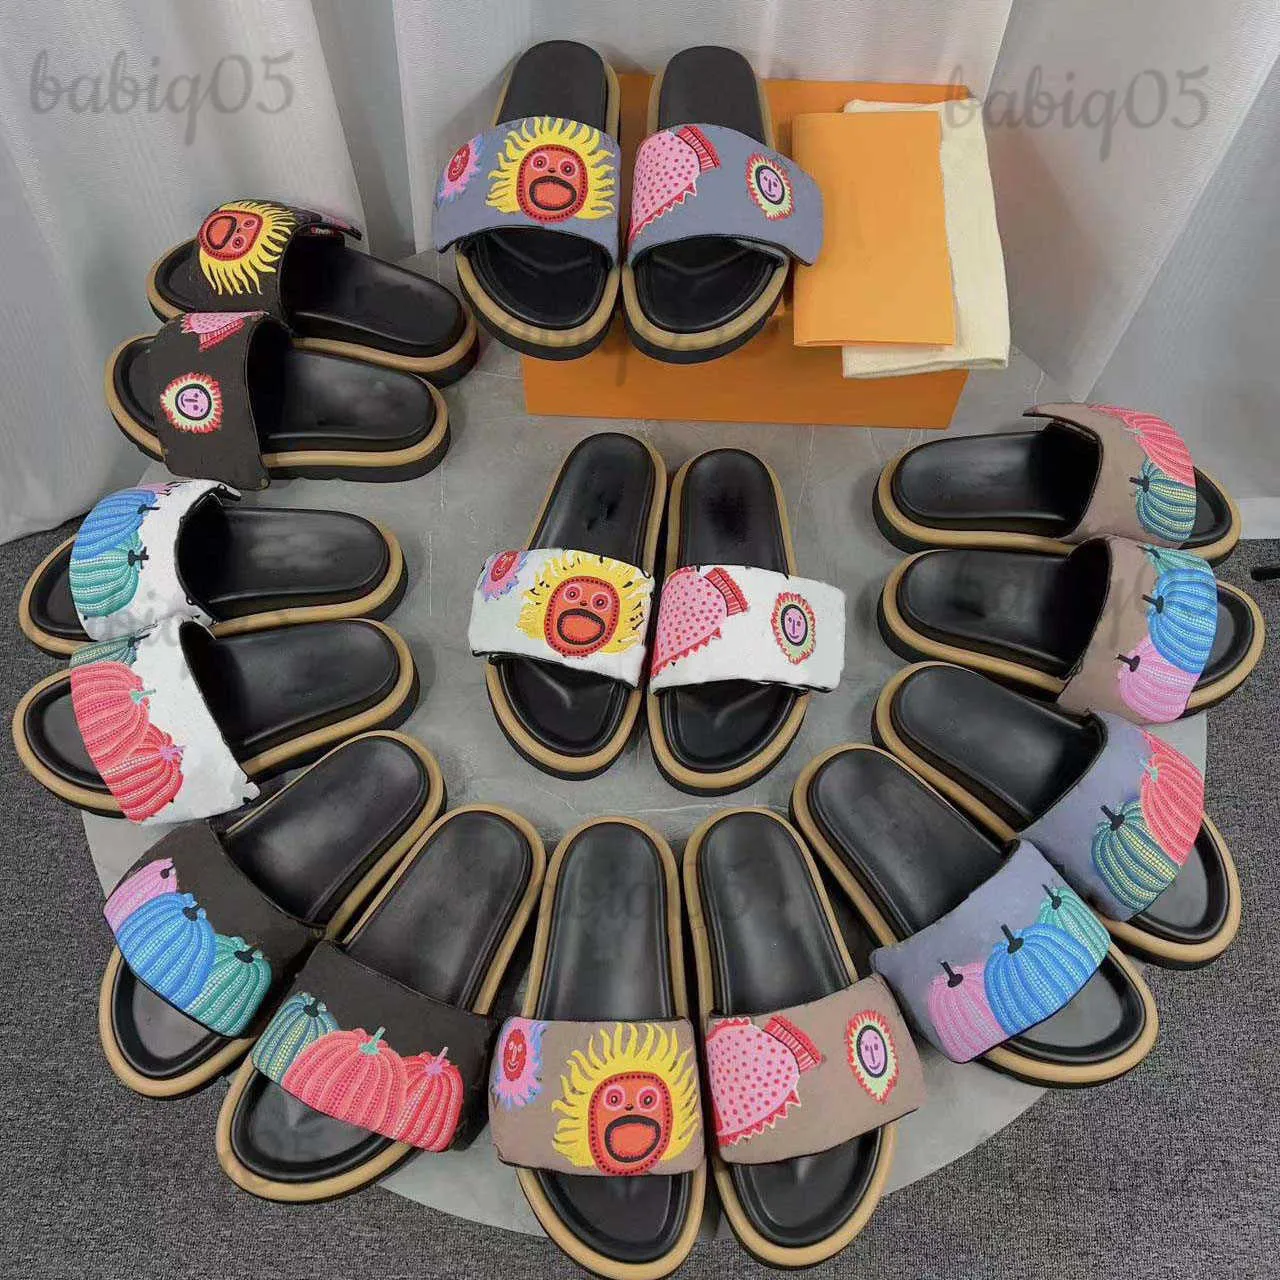 Havuz Yastığı Yeni Terlik Tasarımcı Kadın Sandaletleri Gün Batımı Düz Tabanlı Rahat Katır Yastığı Ön Moda Giymesi Kolay Stil 628 babiq05